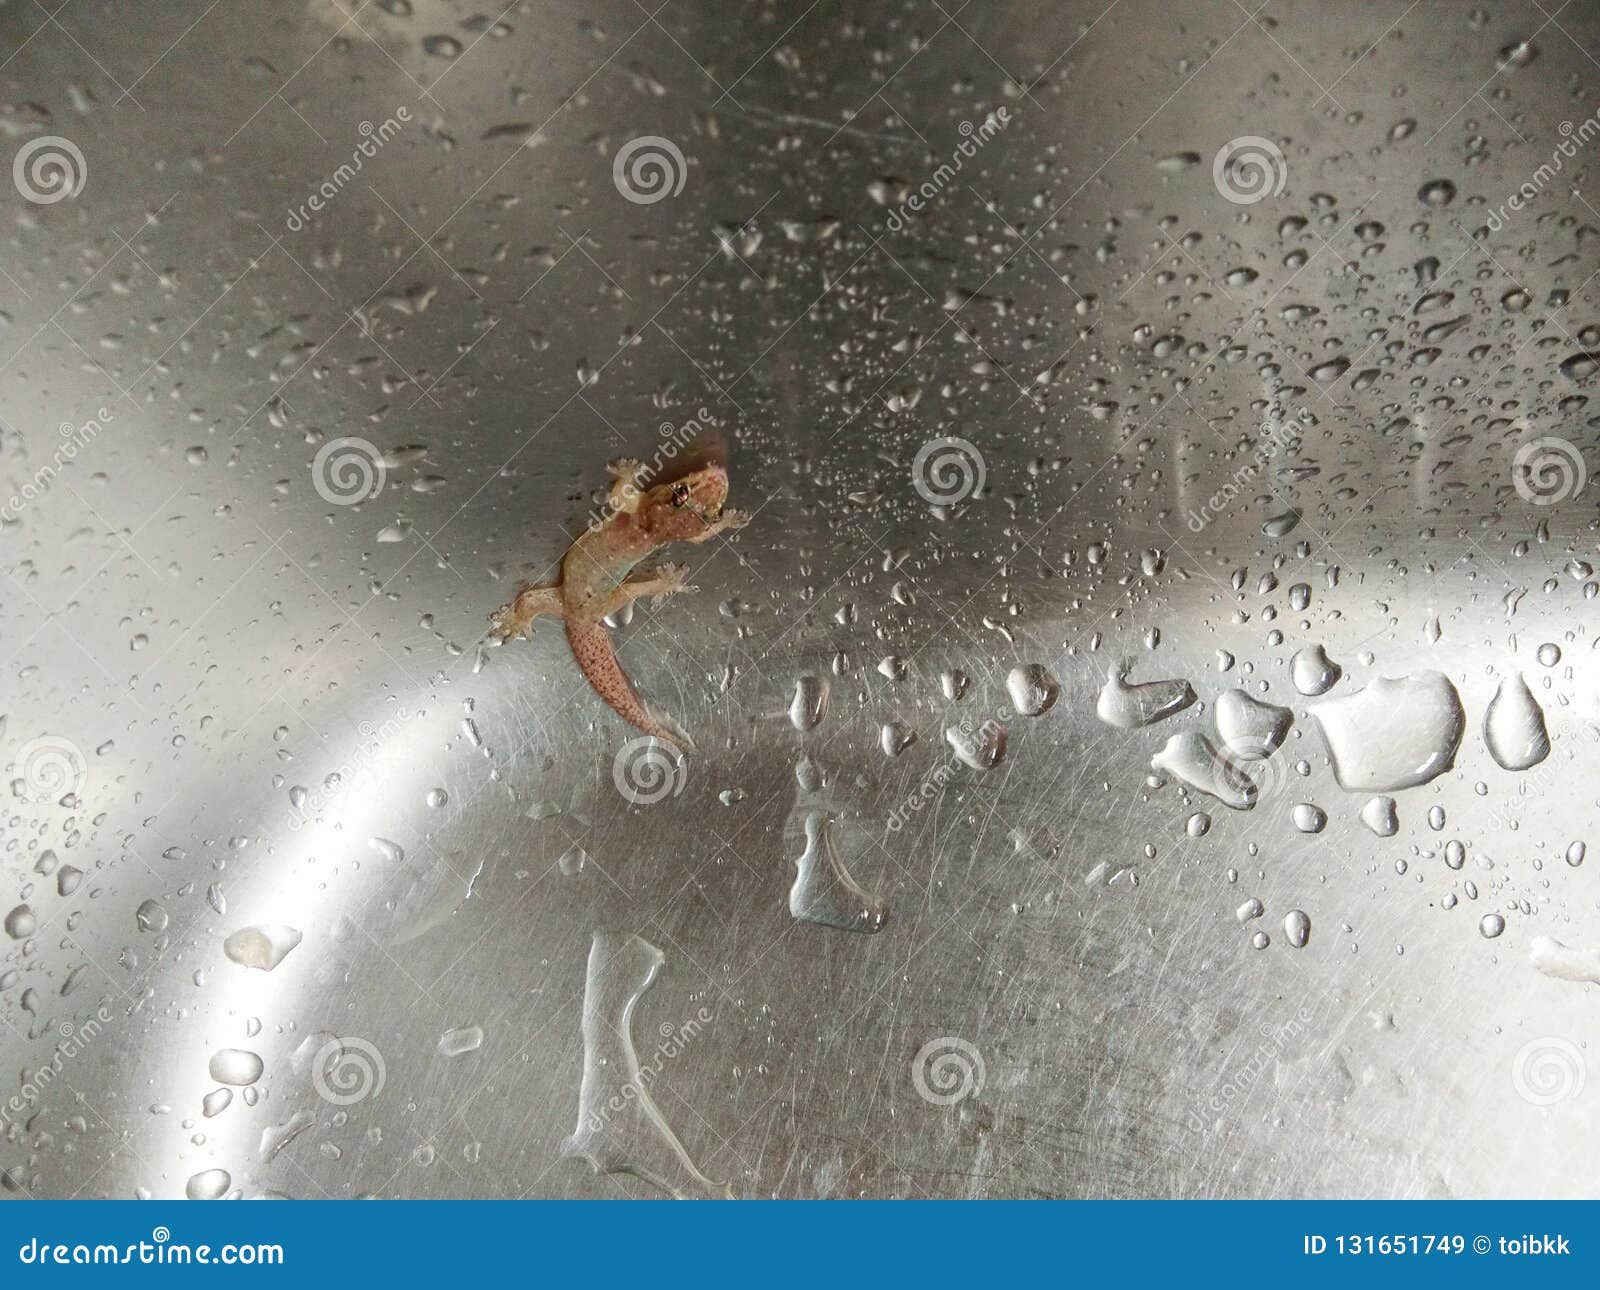 lizard in kitchen sink